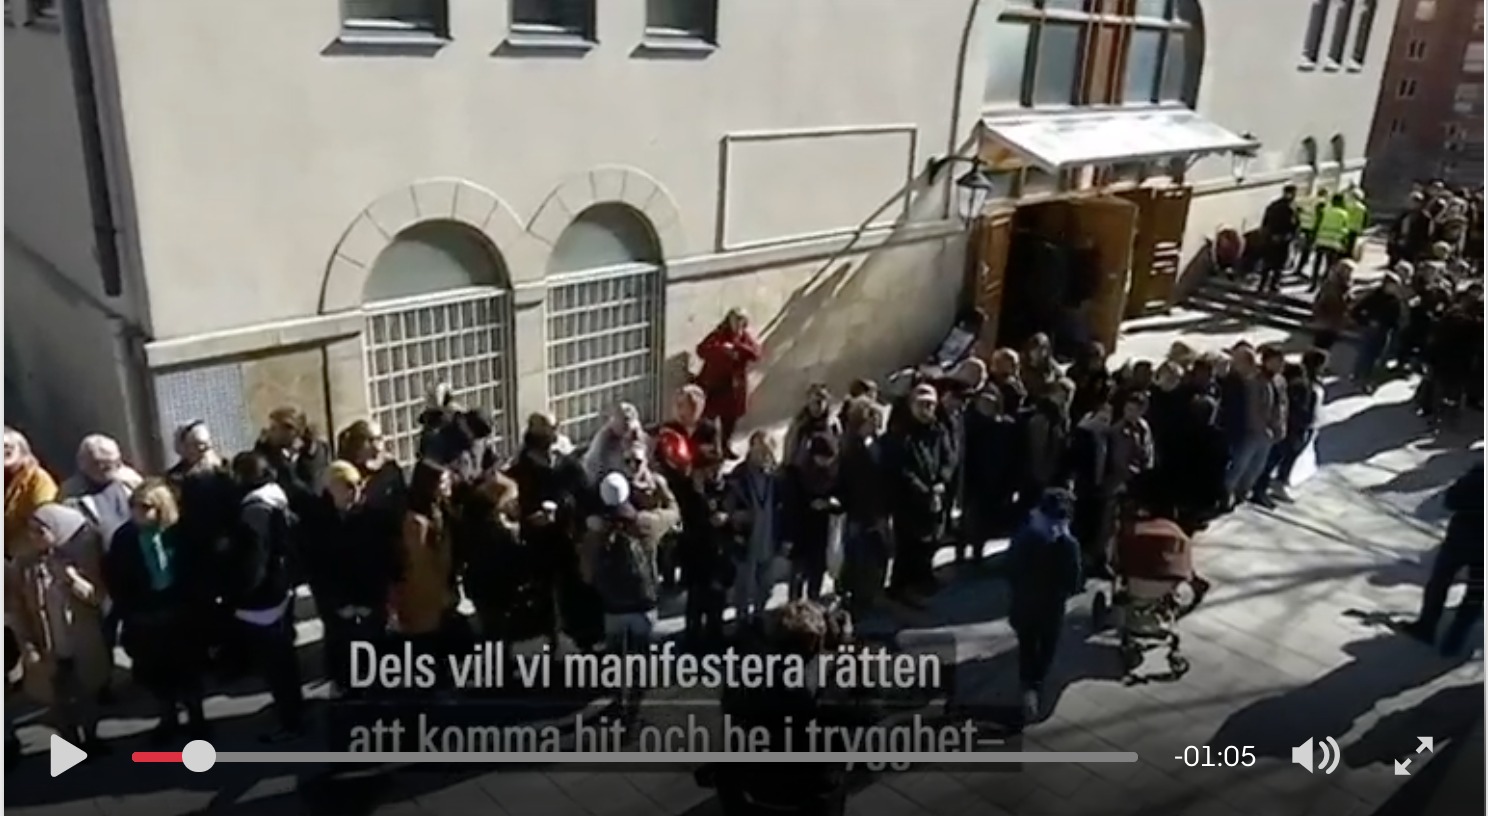 Живое кольцо организовали в Стокгольме вокруг мечети в знак солидарности с пострадавшими после теракта в Новой Зеландии